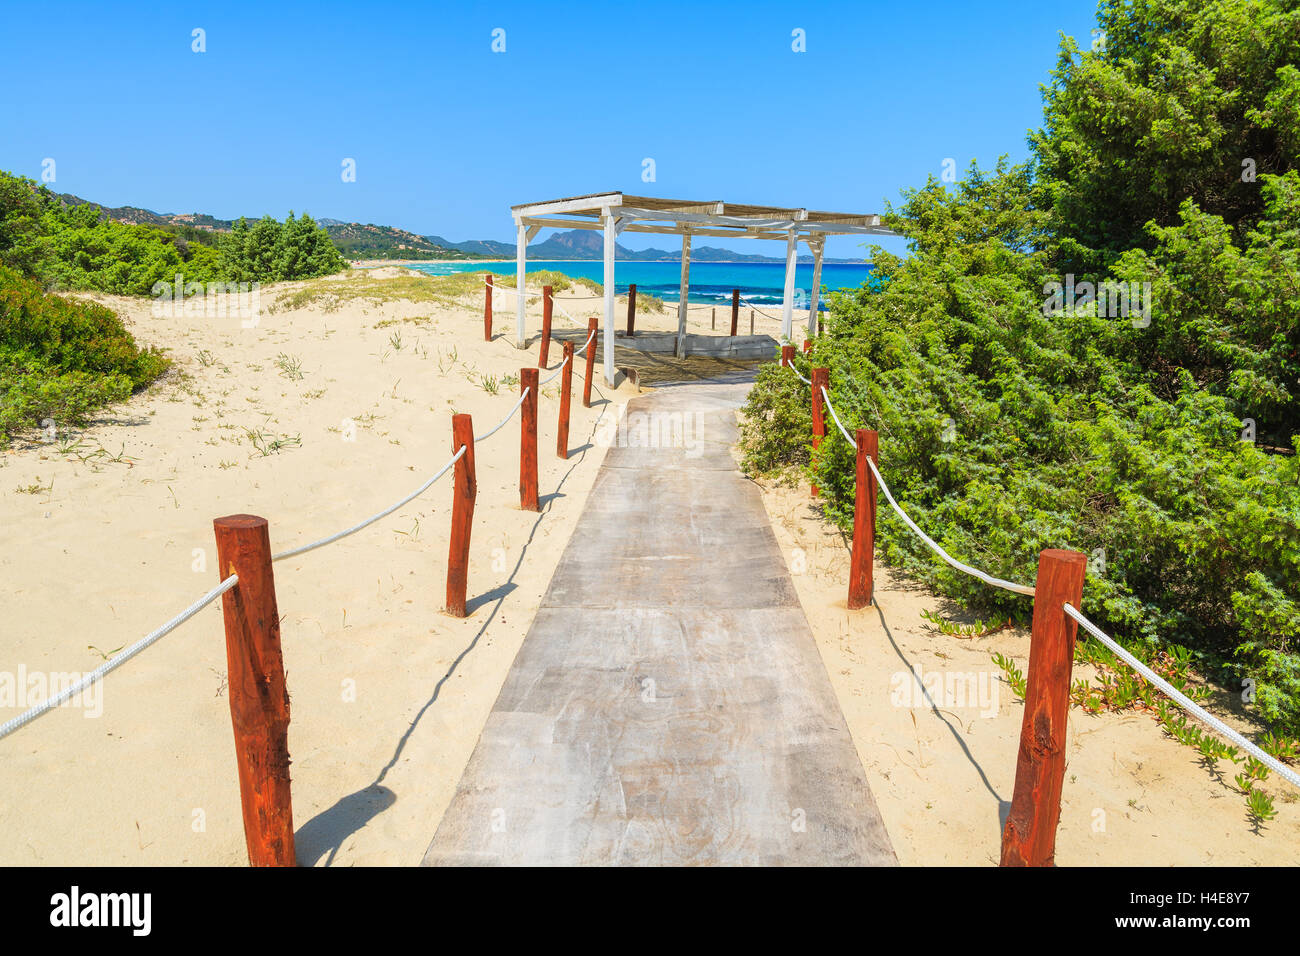 Chemin d'accès à la plage de Costa Rei, Sardaigne, île, Italie Banque D'Images